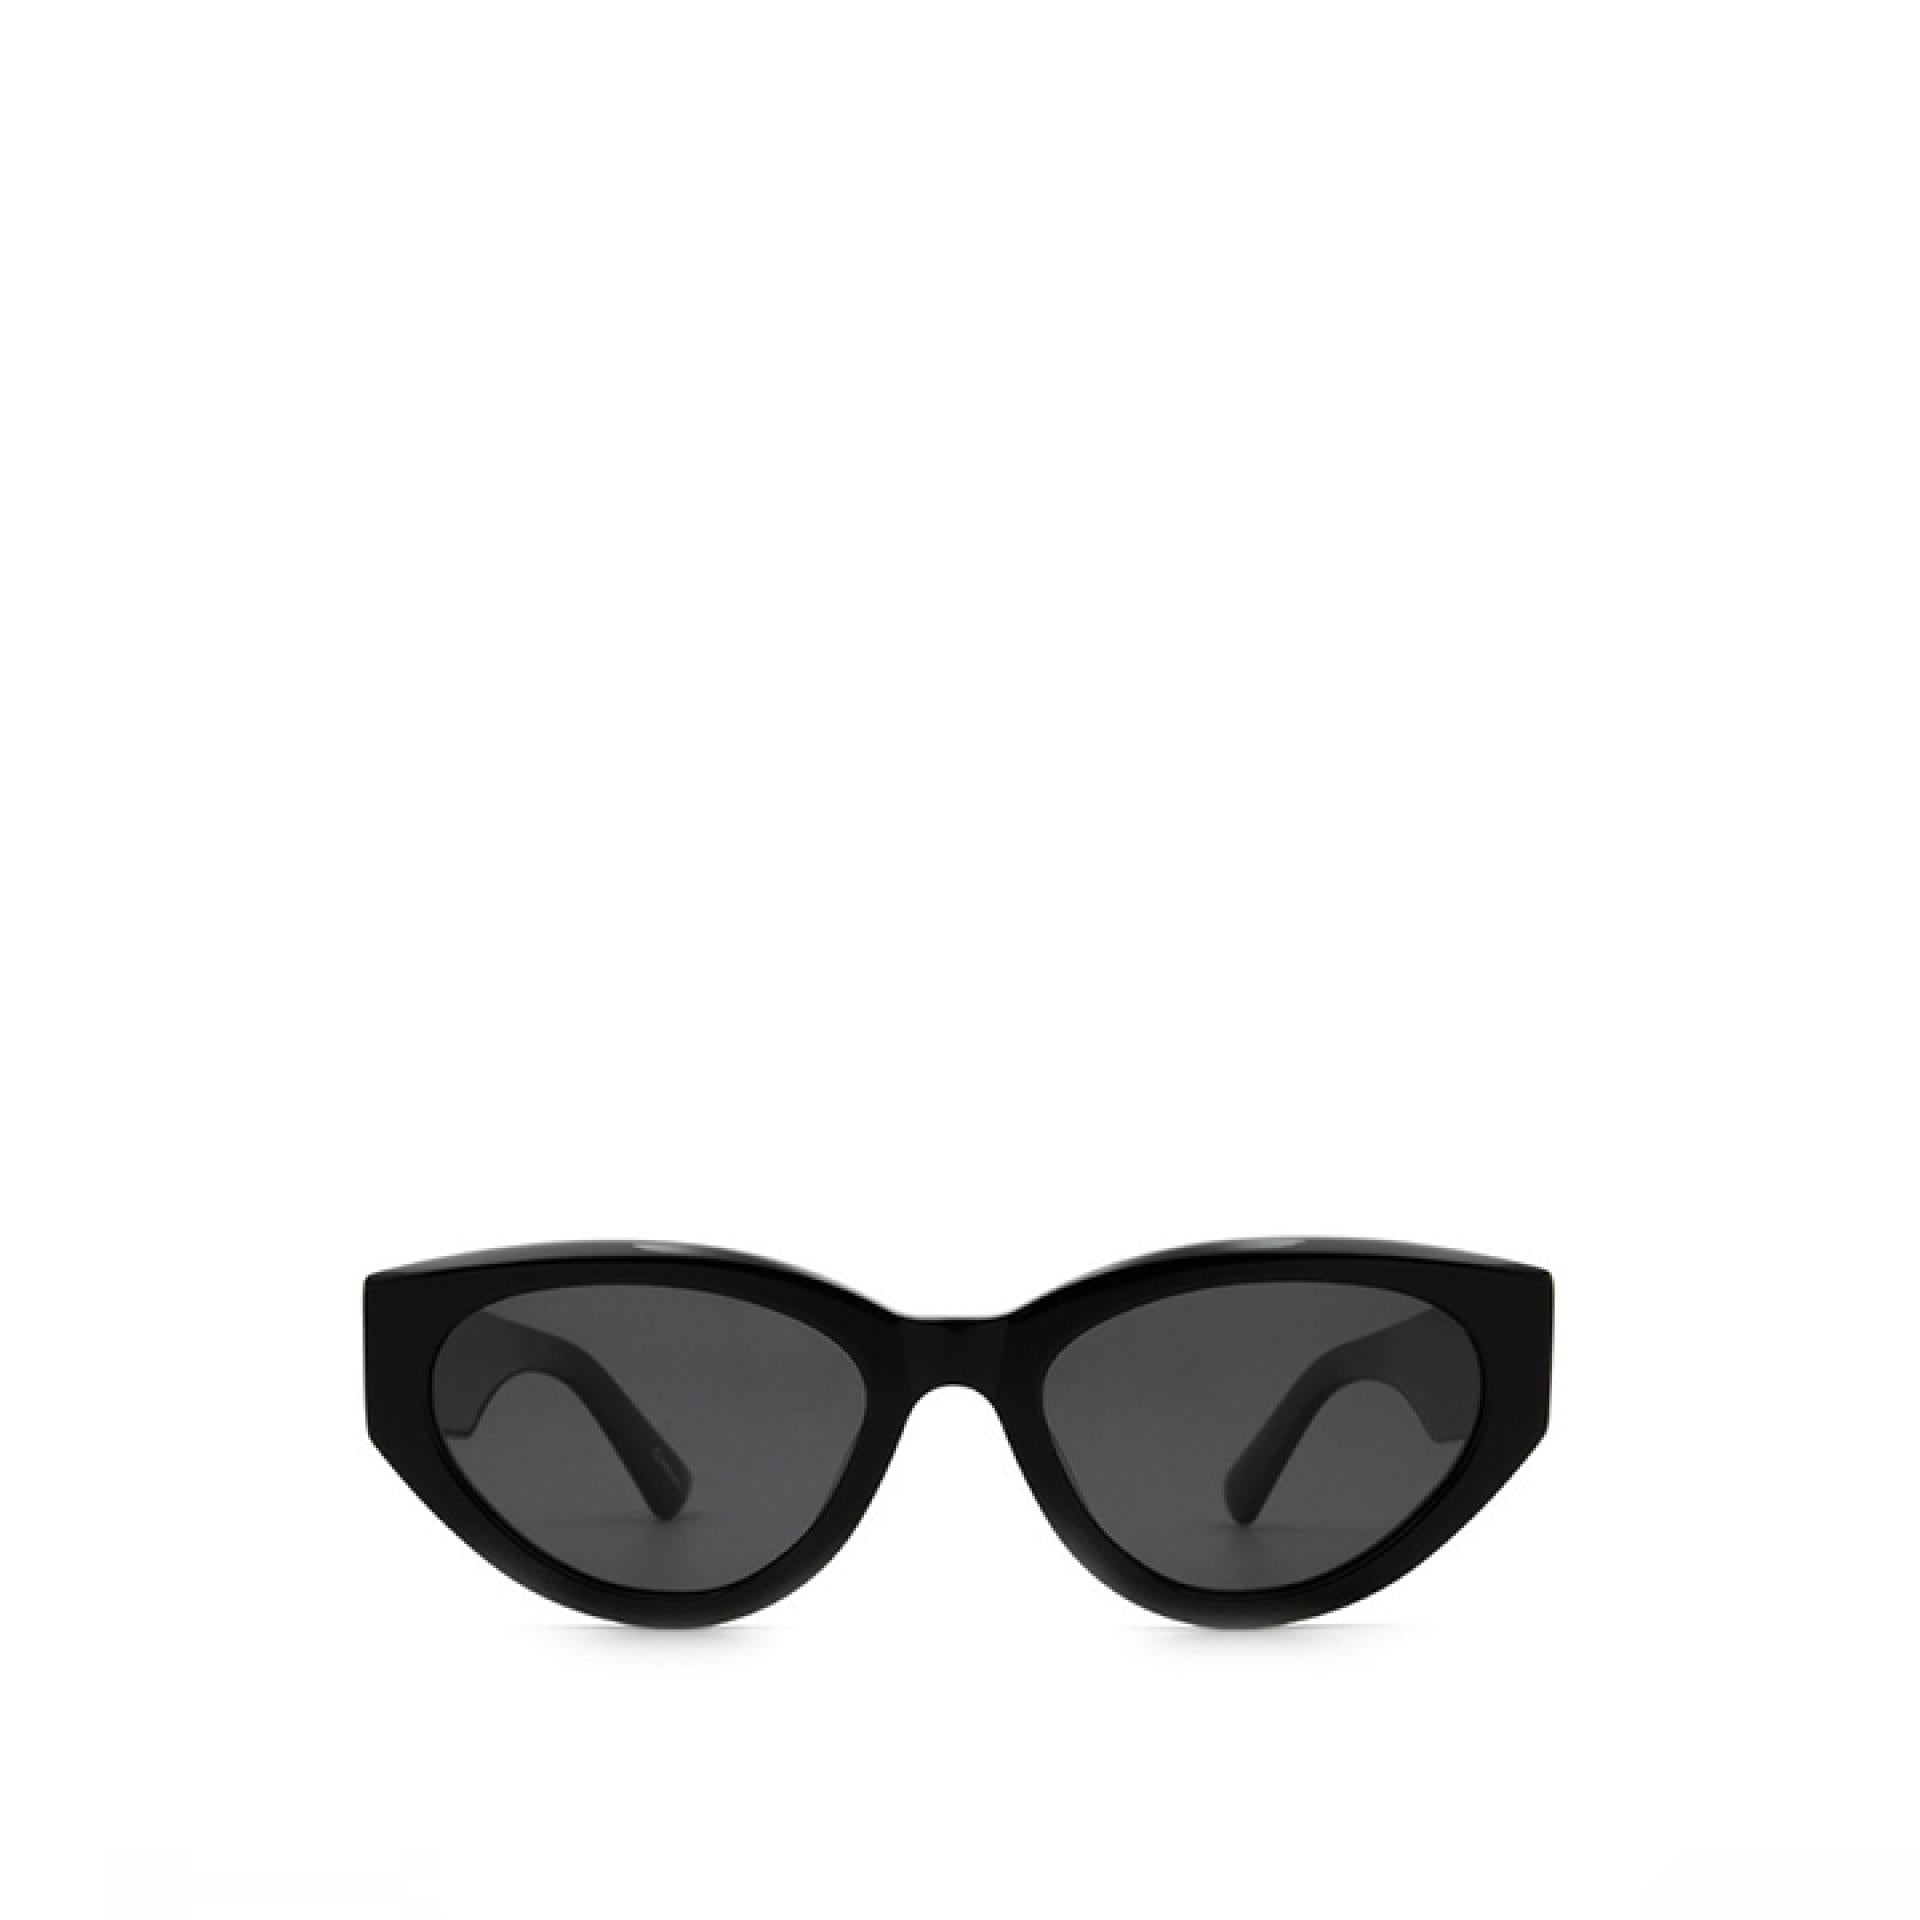 Chimi Sonnenbrille Modell 06 Black